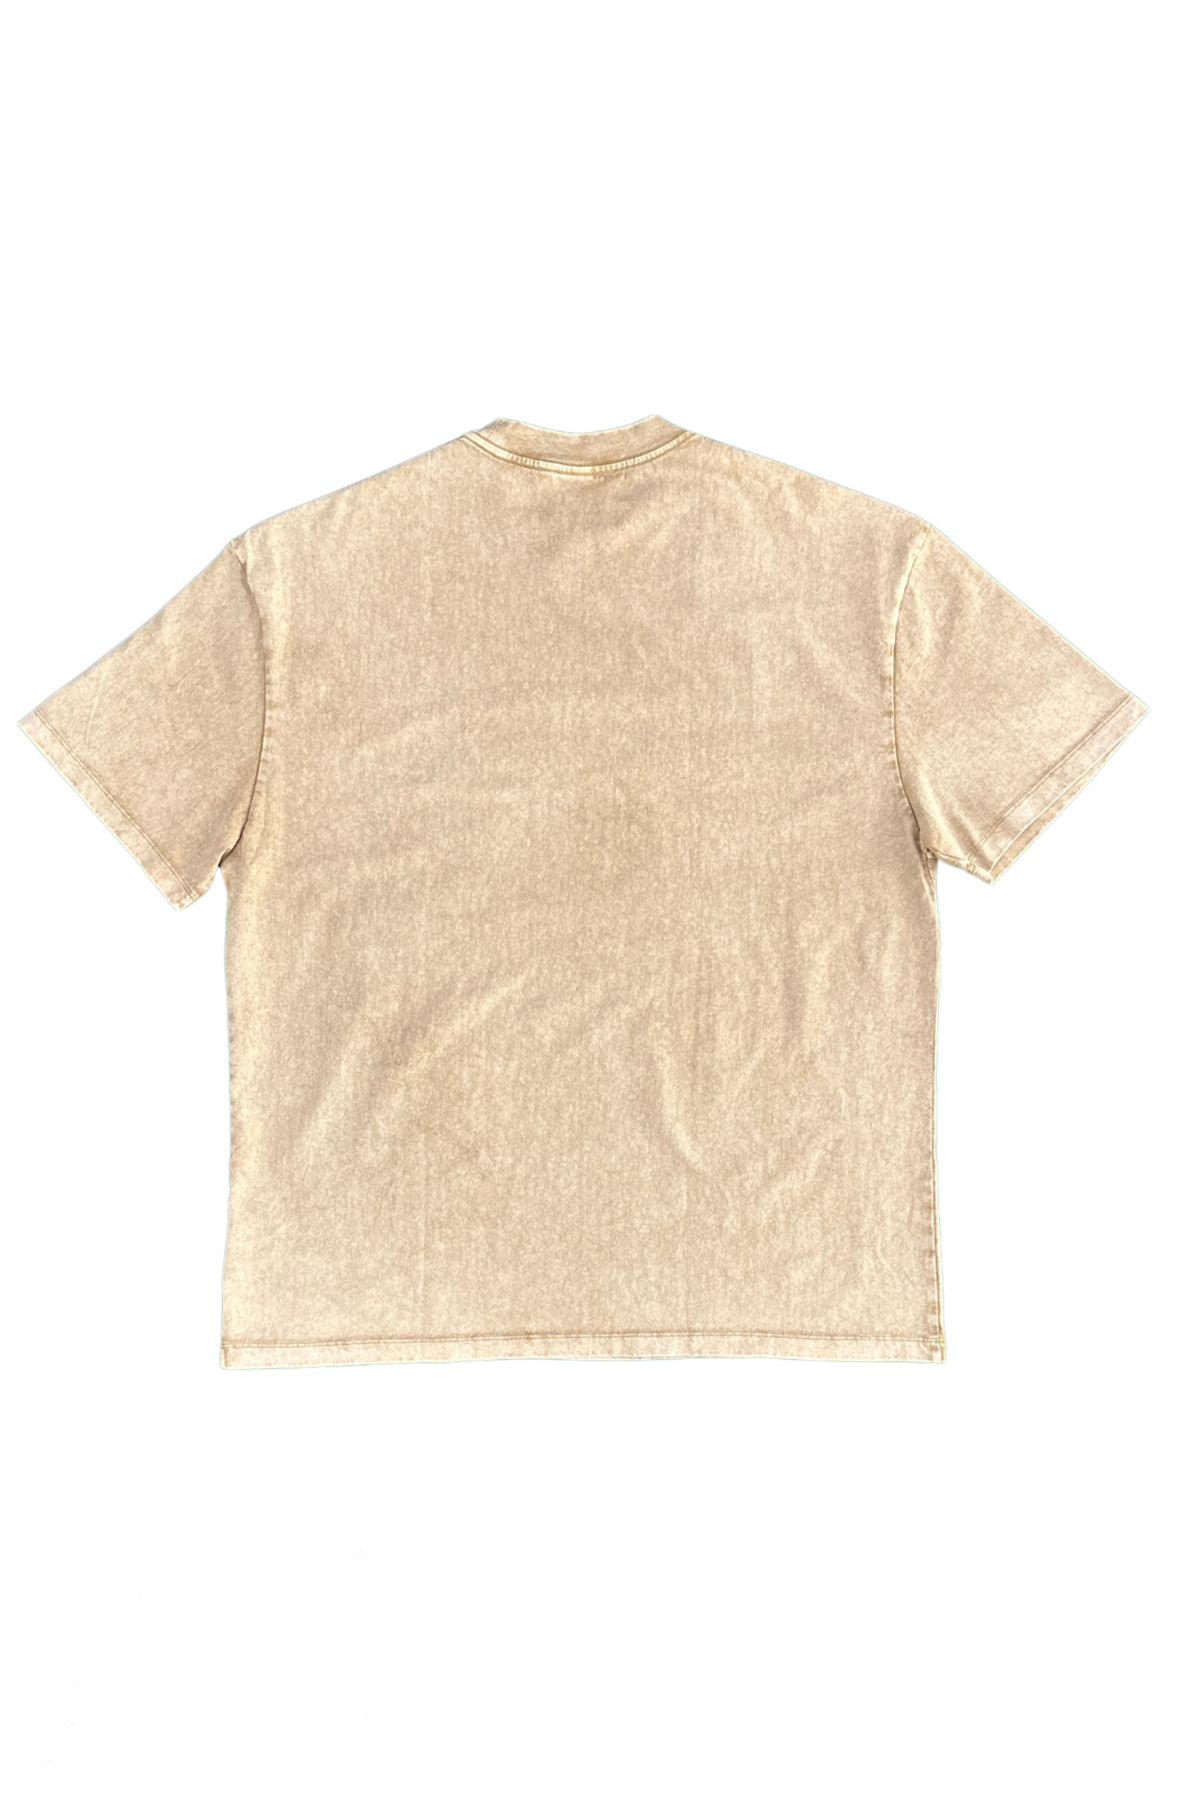 Stone-Wash-Oversized-Round-Neck-Khaki-T-shirt-Unisex-back